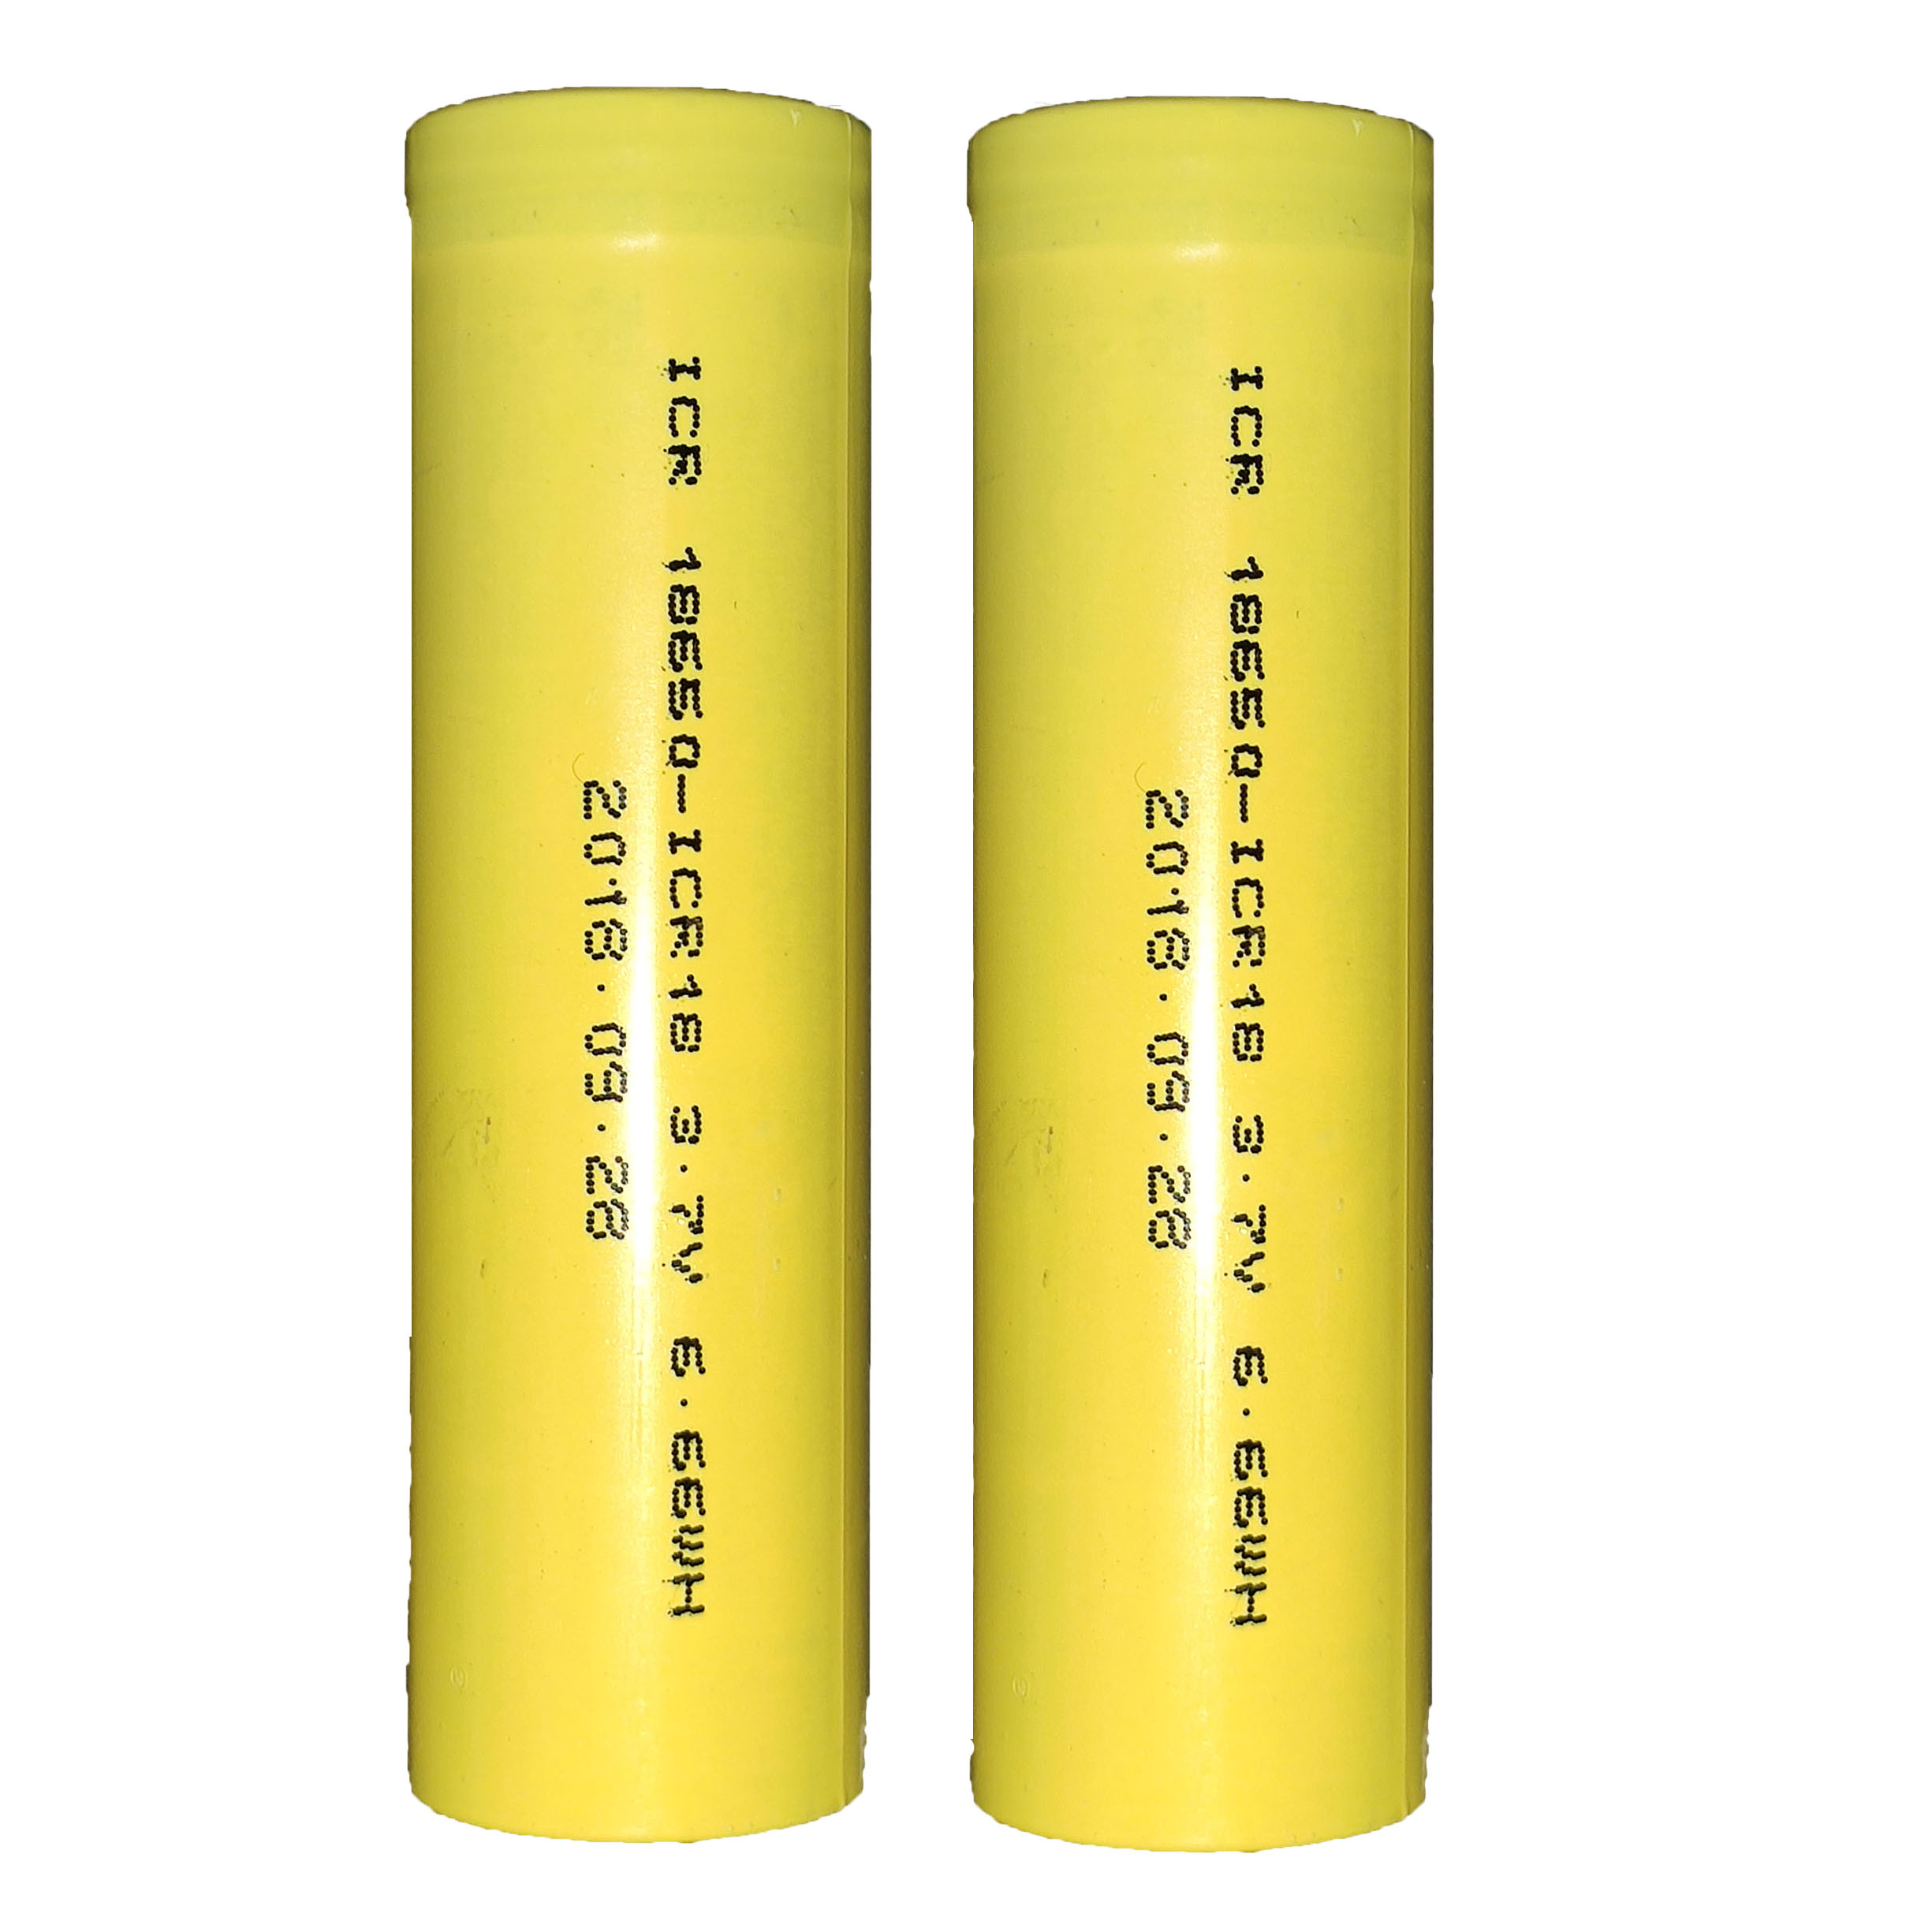 باتری لیتیوم یون قابل شارژ مدل lcr-18650 ظرفیت 2500 میلی آمپرساعت بسته 2 عددی